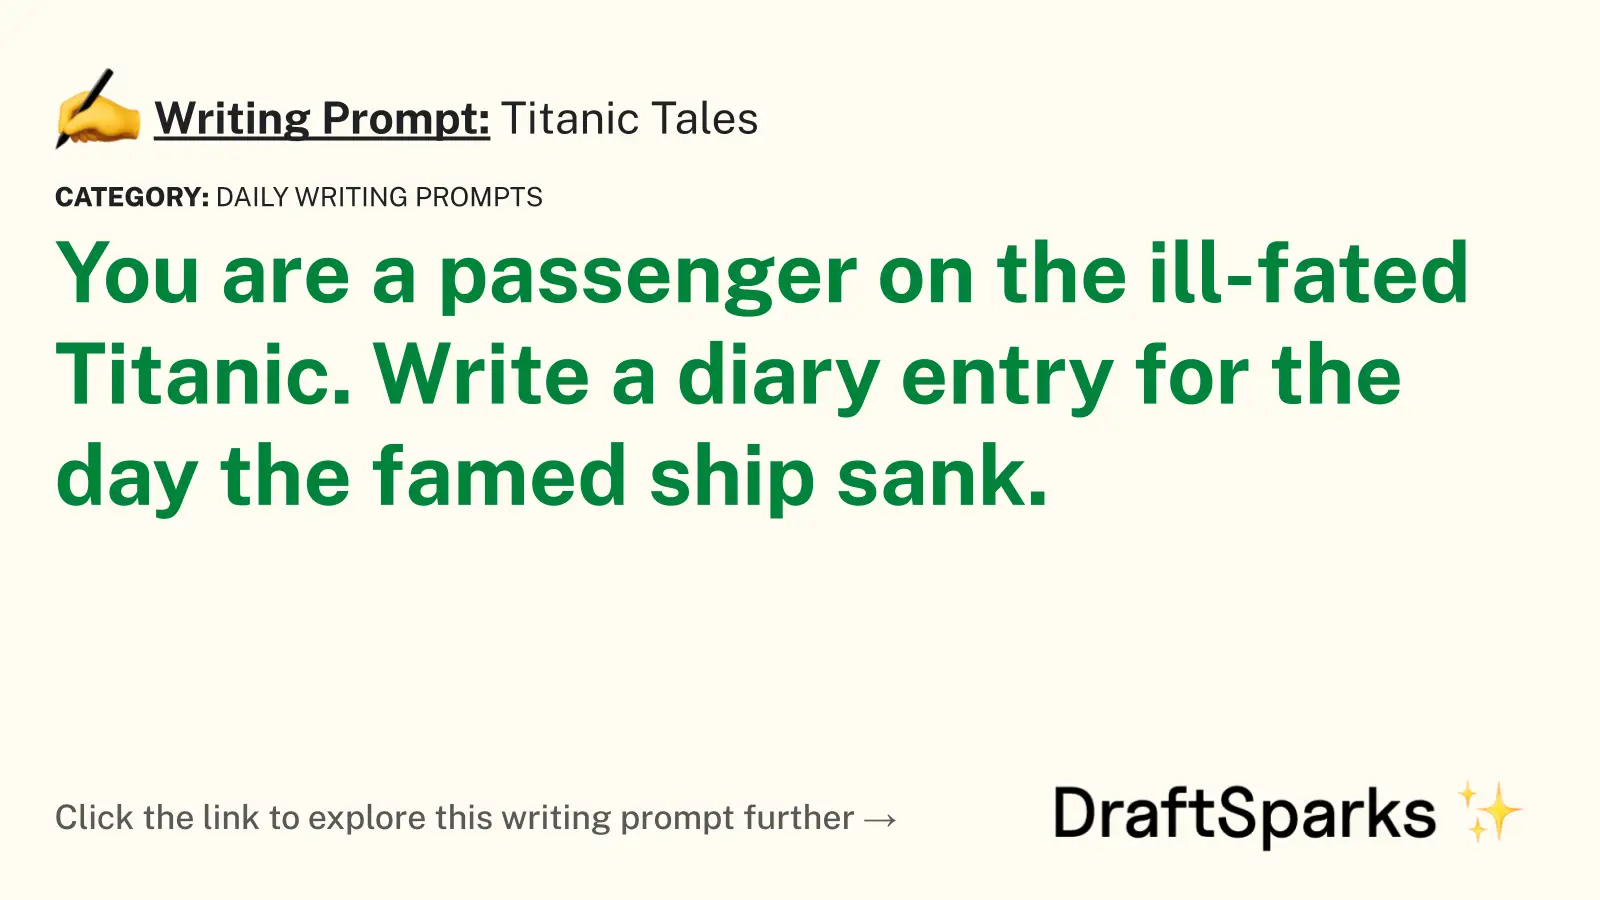 Titanic Tales